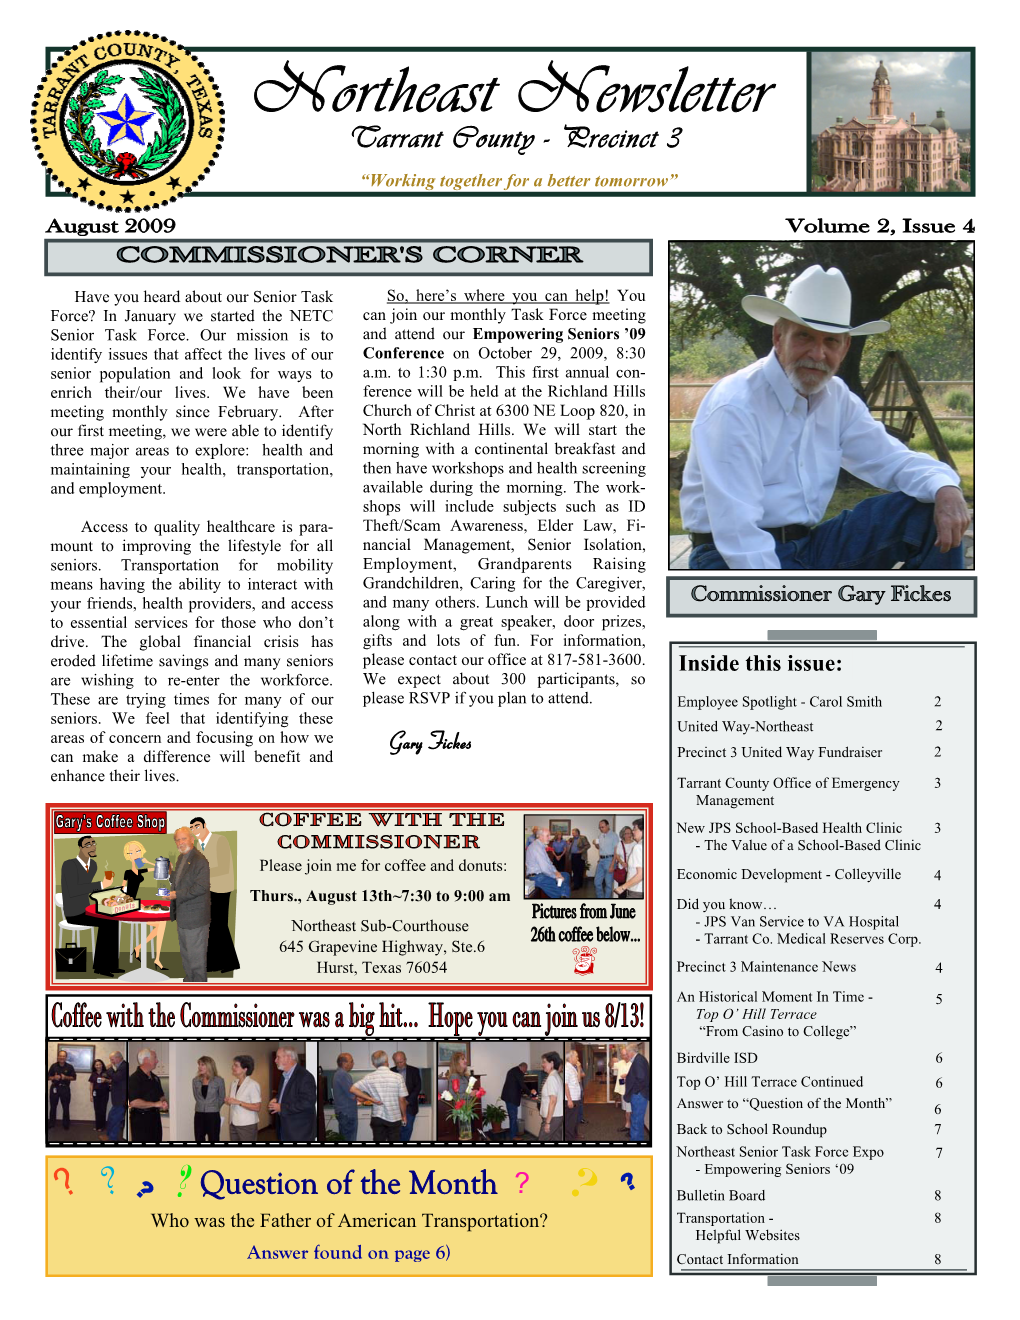 Northeast Newsletter August 09